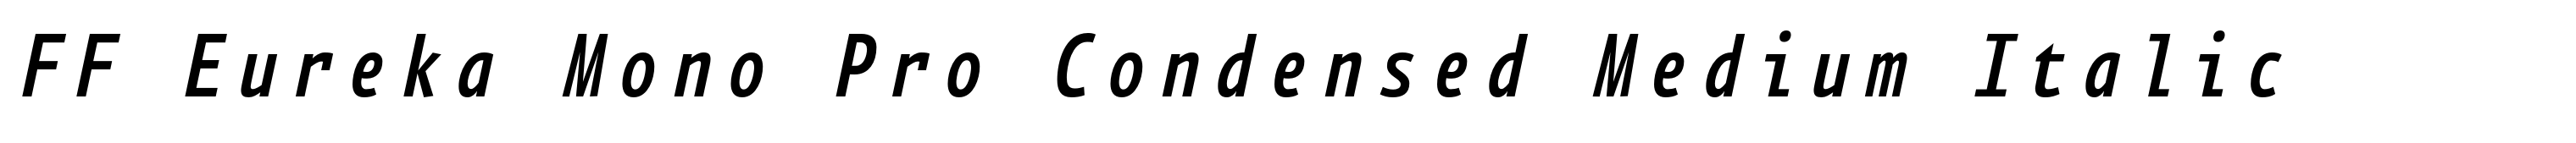 FF Eureka Mono Pro Condensed Medium Italic